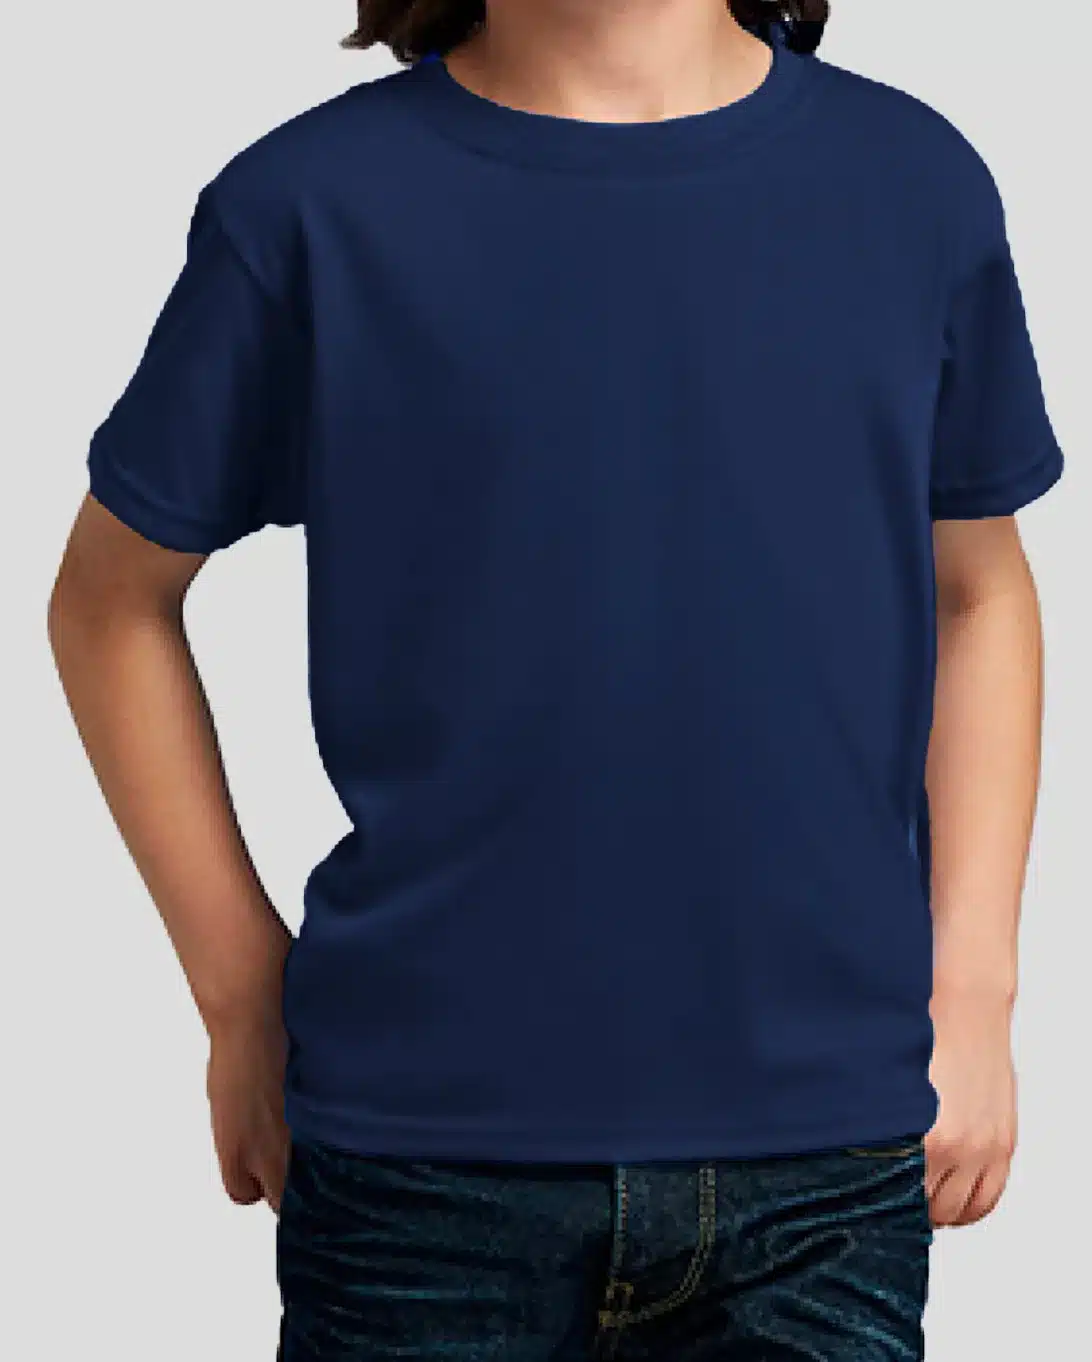 Camisetas de Niño 100% Algodón en Colores Surtidos